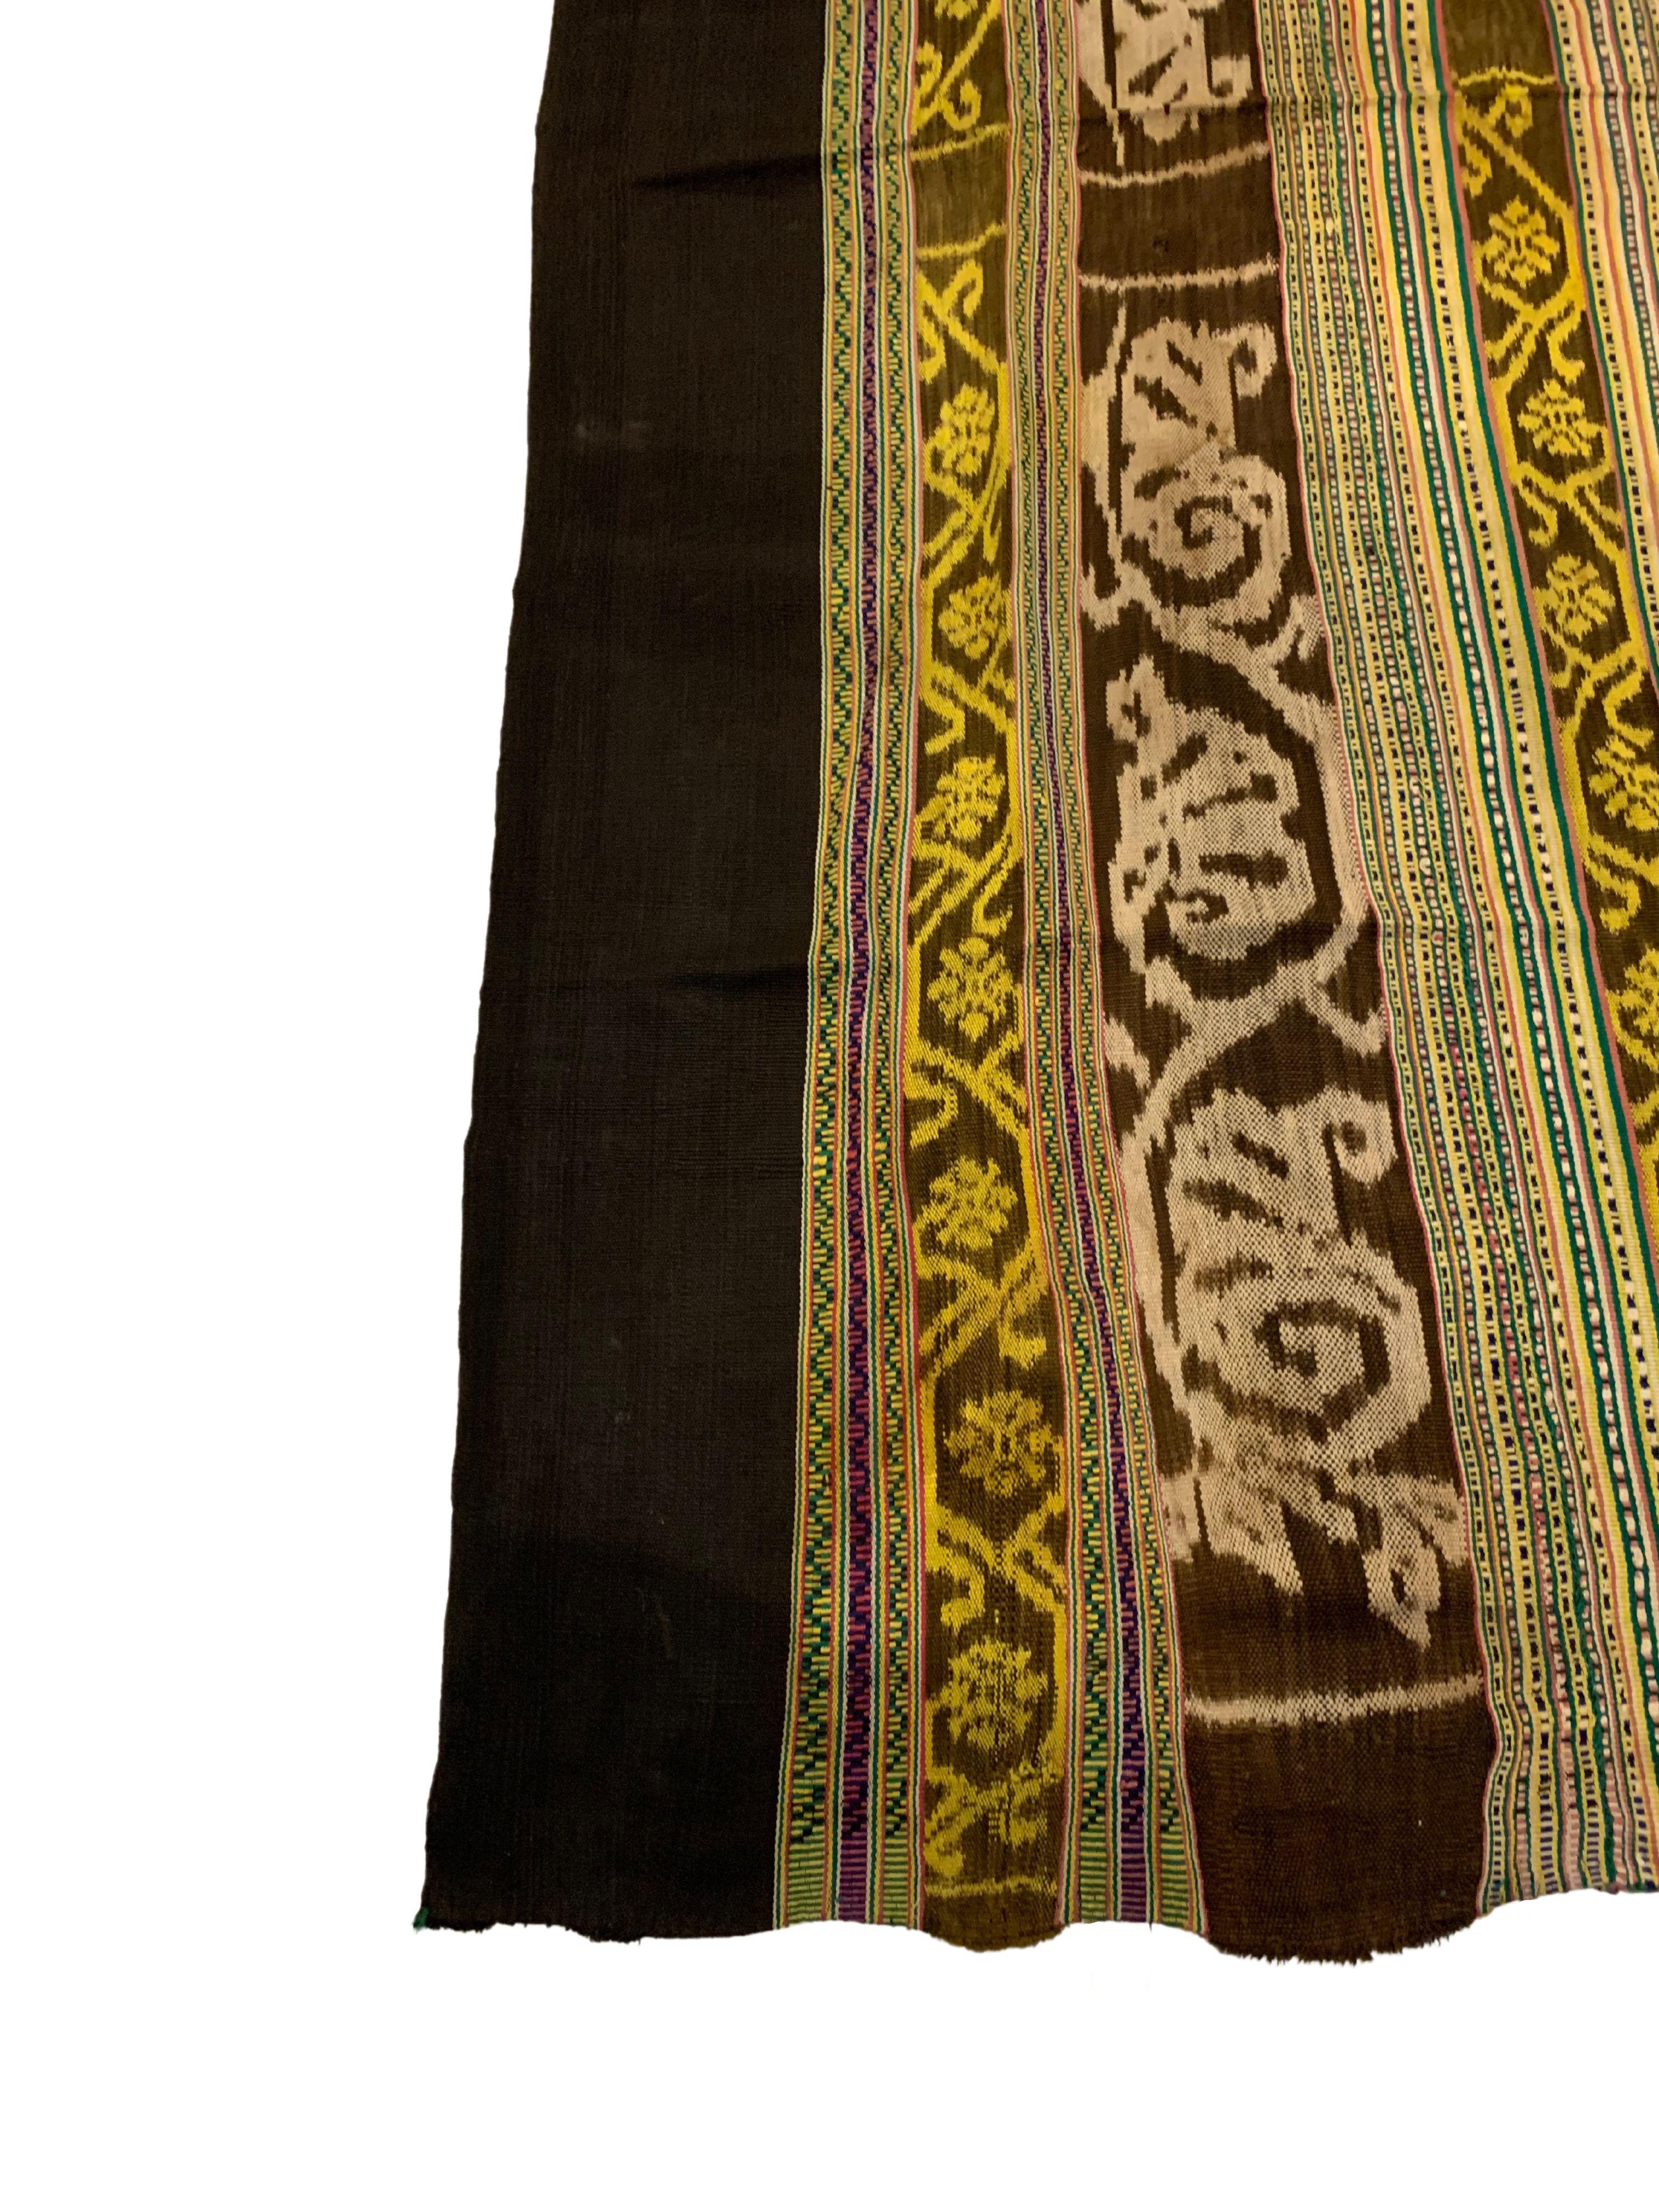 Ikat-Textil von Timor-Insel mit atemberaubendem naturfarbenem Farbstoff, Indonesien (Handgewebt) im Angebot